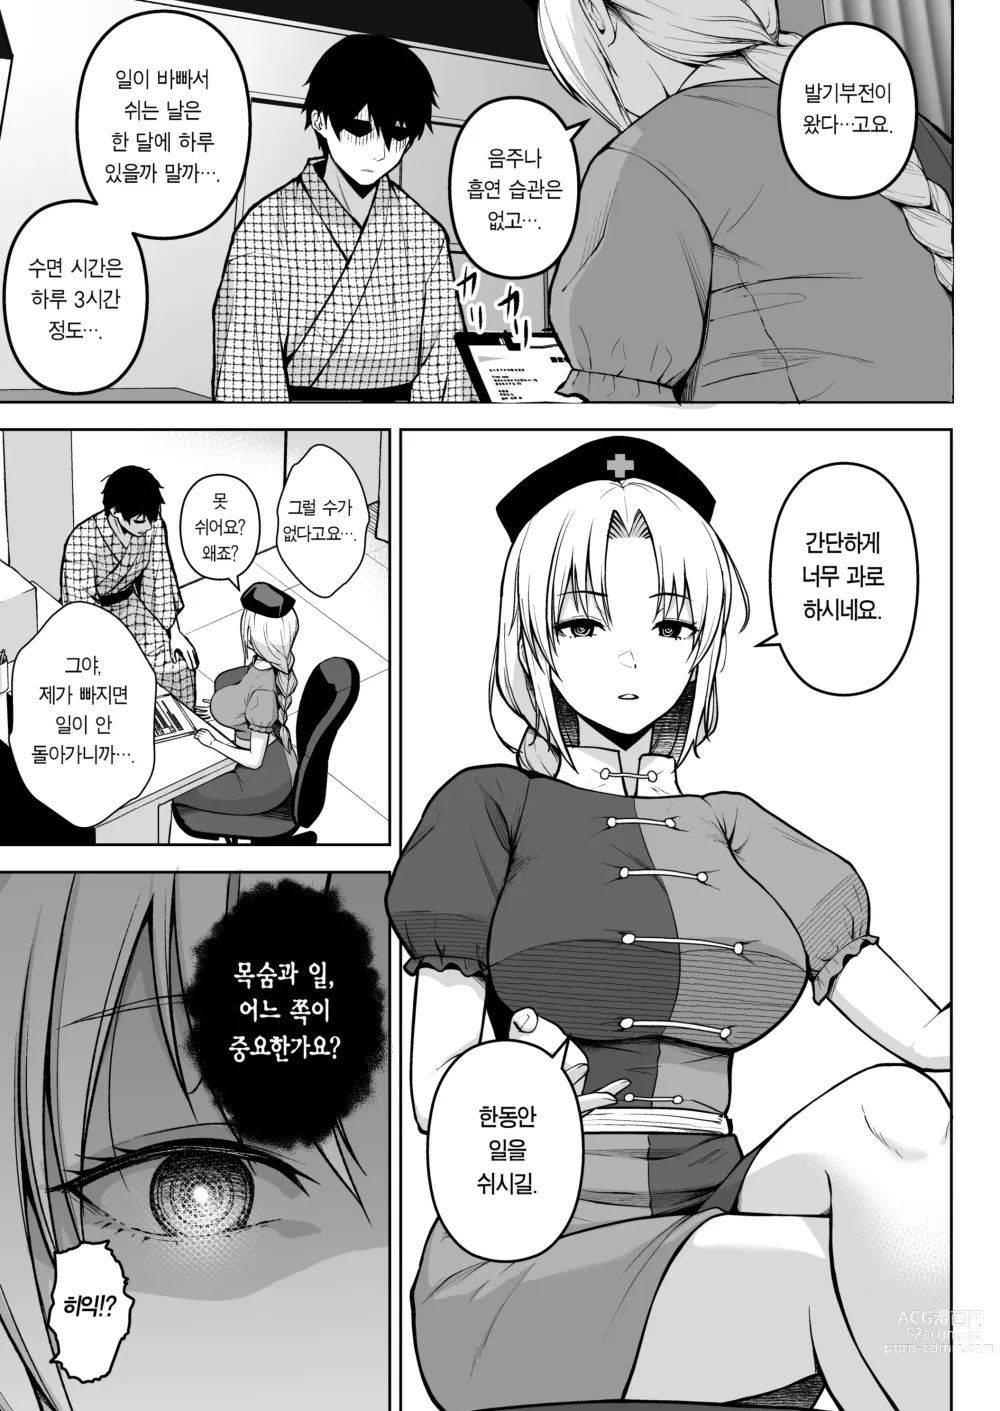 Page 3 of doujinshi 에이린이 가슴을 존나 괴롭혀져서 P컵이 되기까지의 이야기